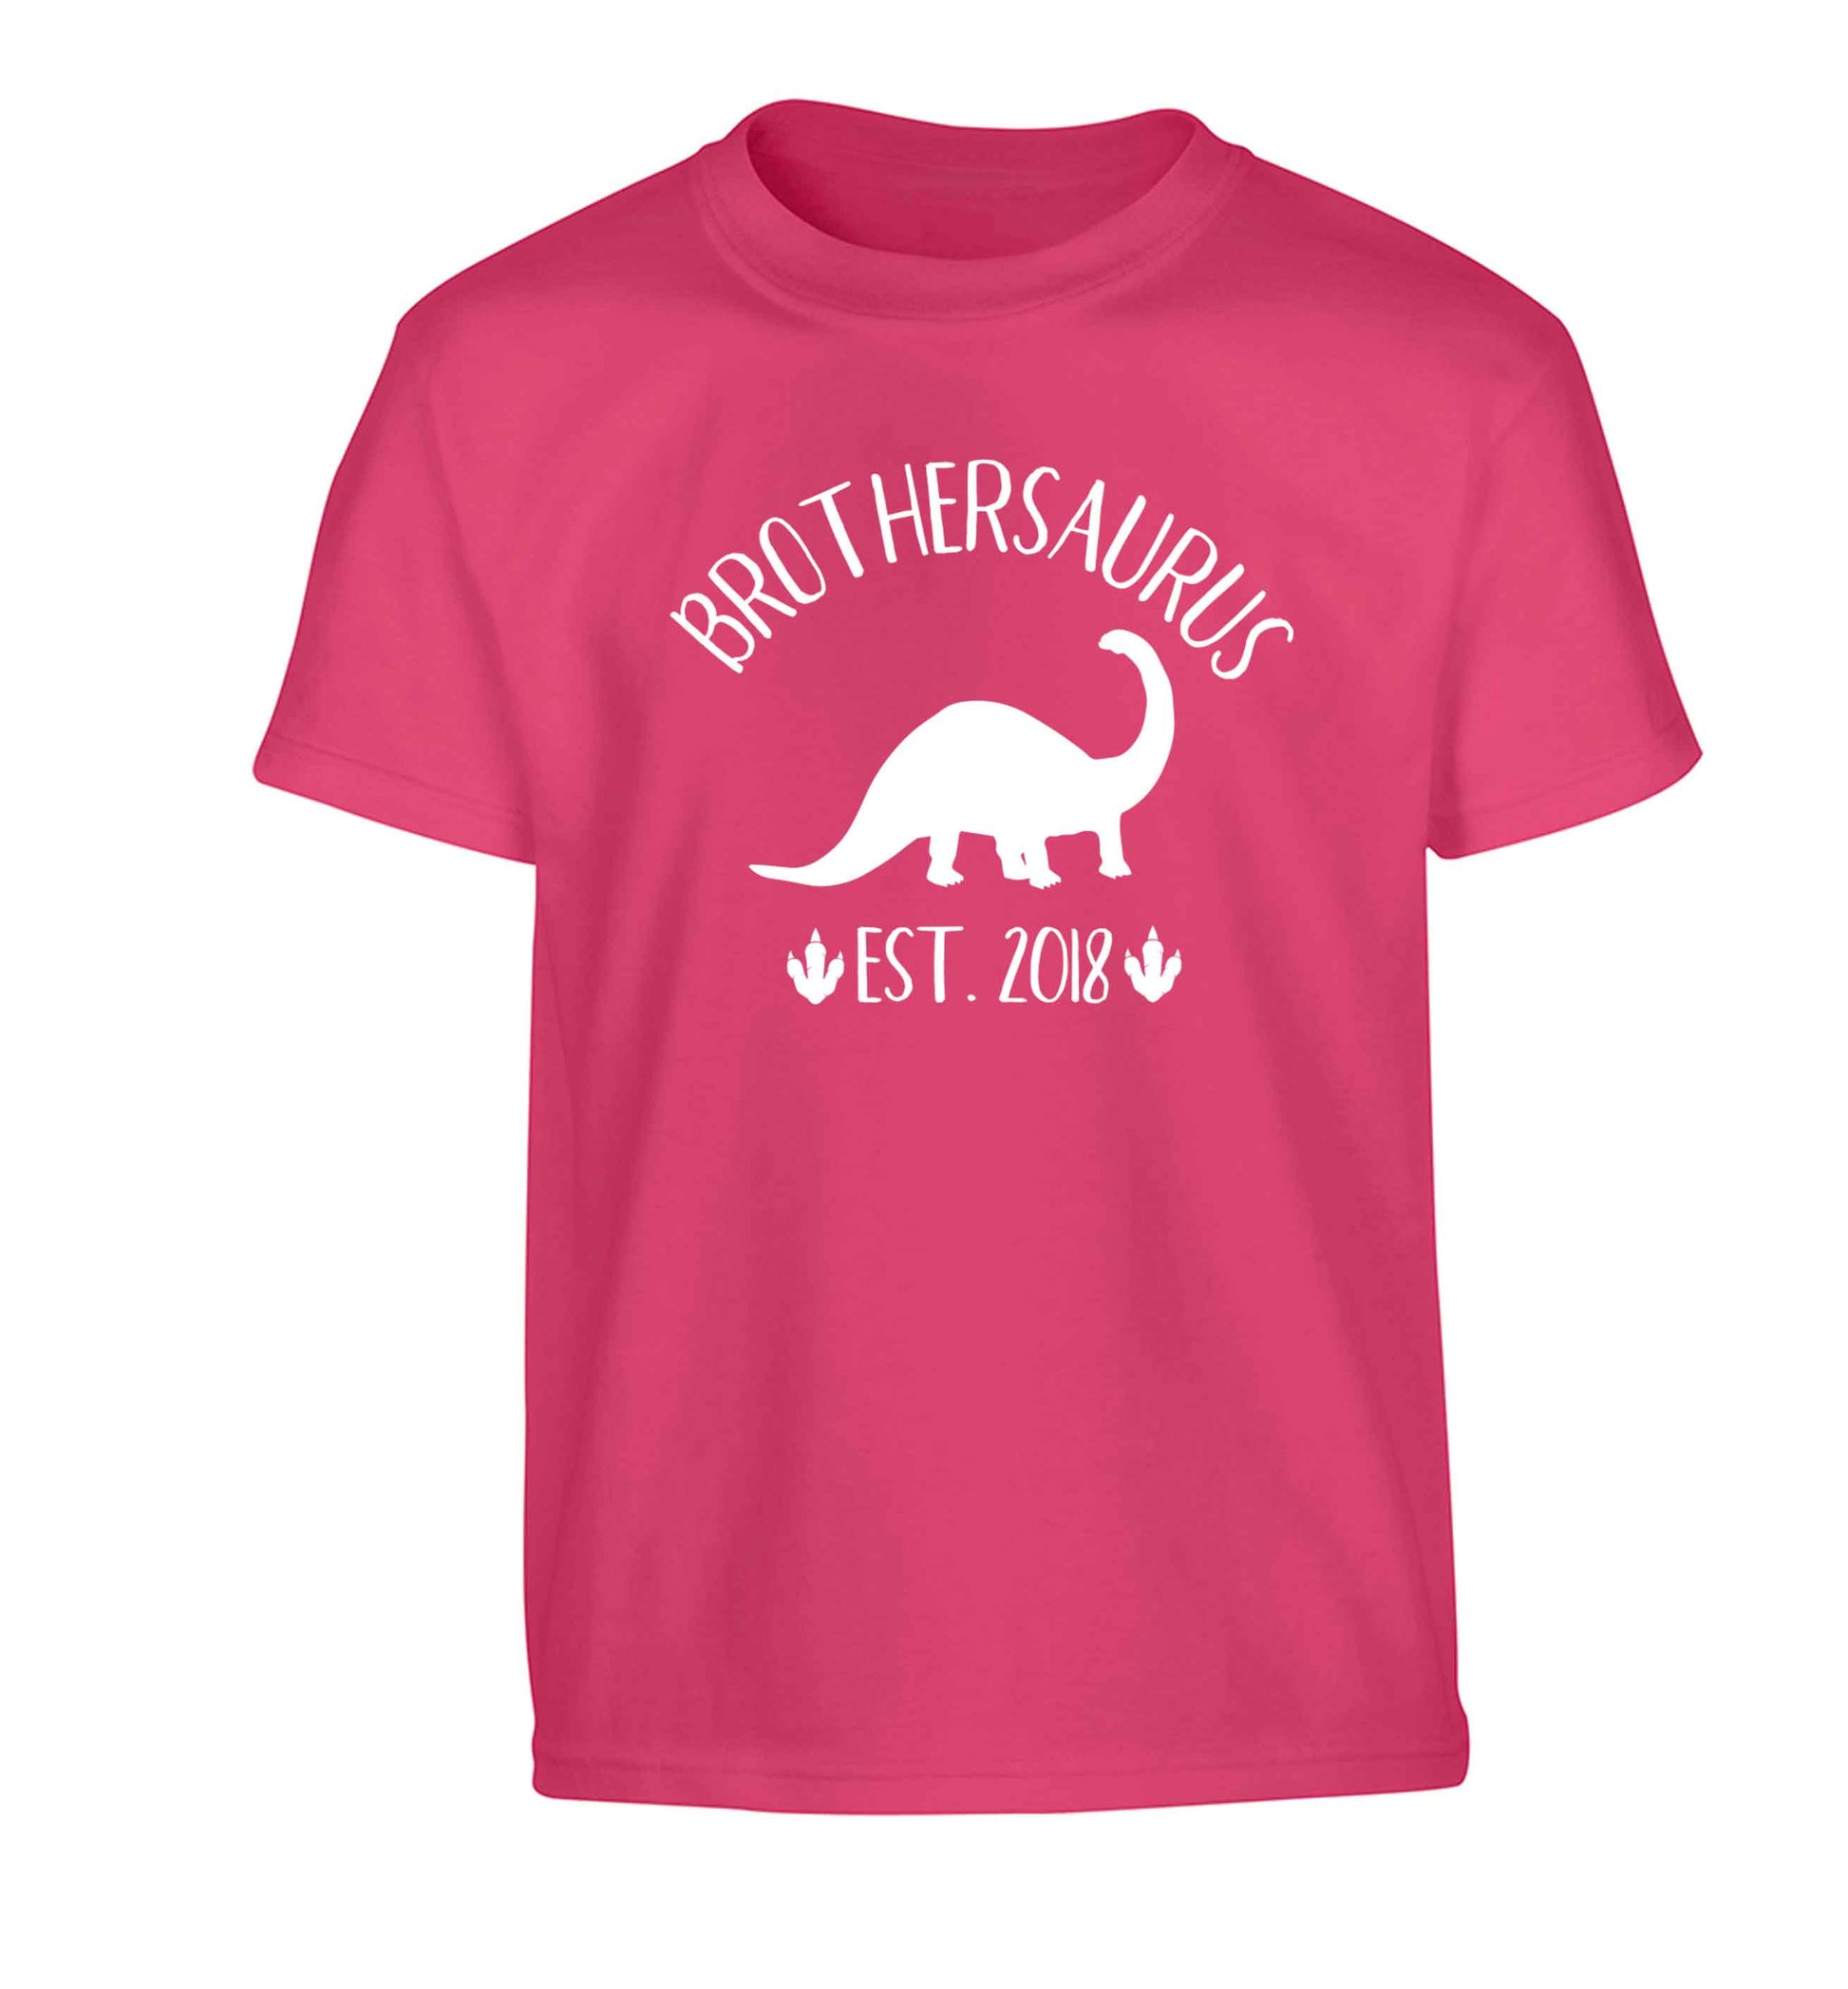 Personalised brothersaurus since (custom date) Children's pink Tshirt 12-13 Years